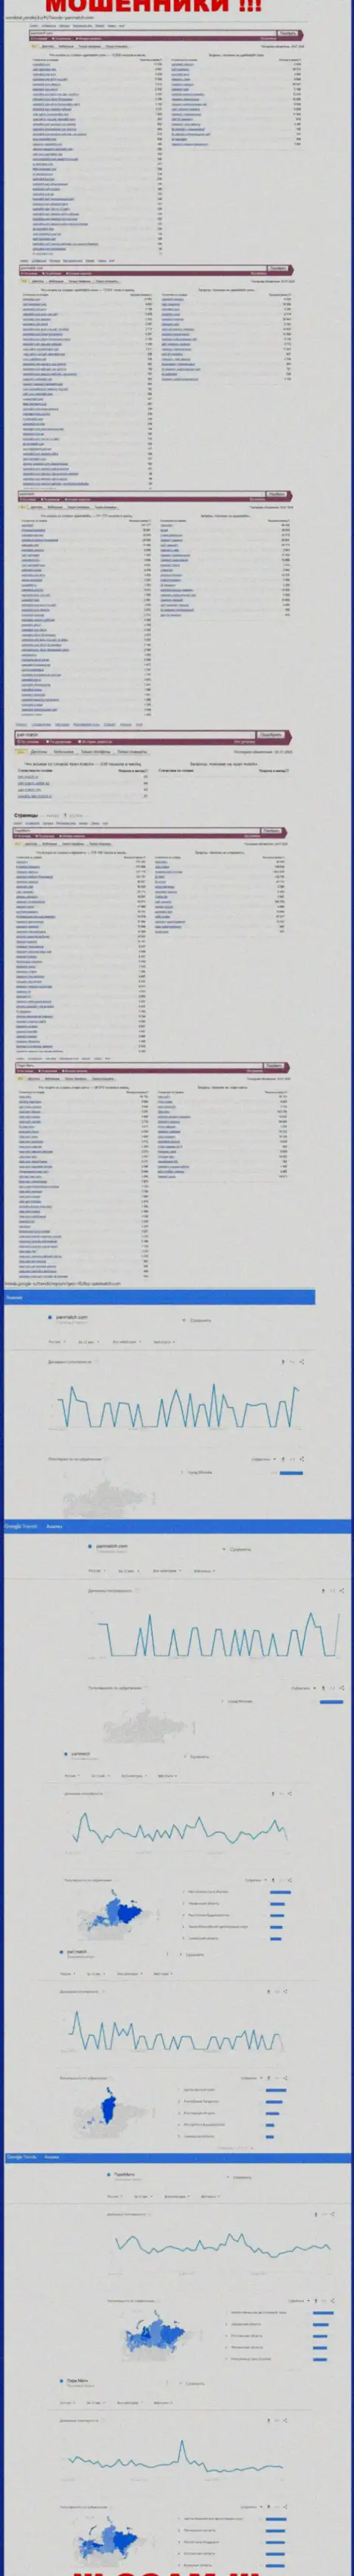 Количество онлайн запросов в поисковиках глобальной сети интернет по бренду шулеров ПариМатч